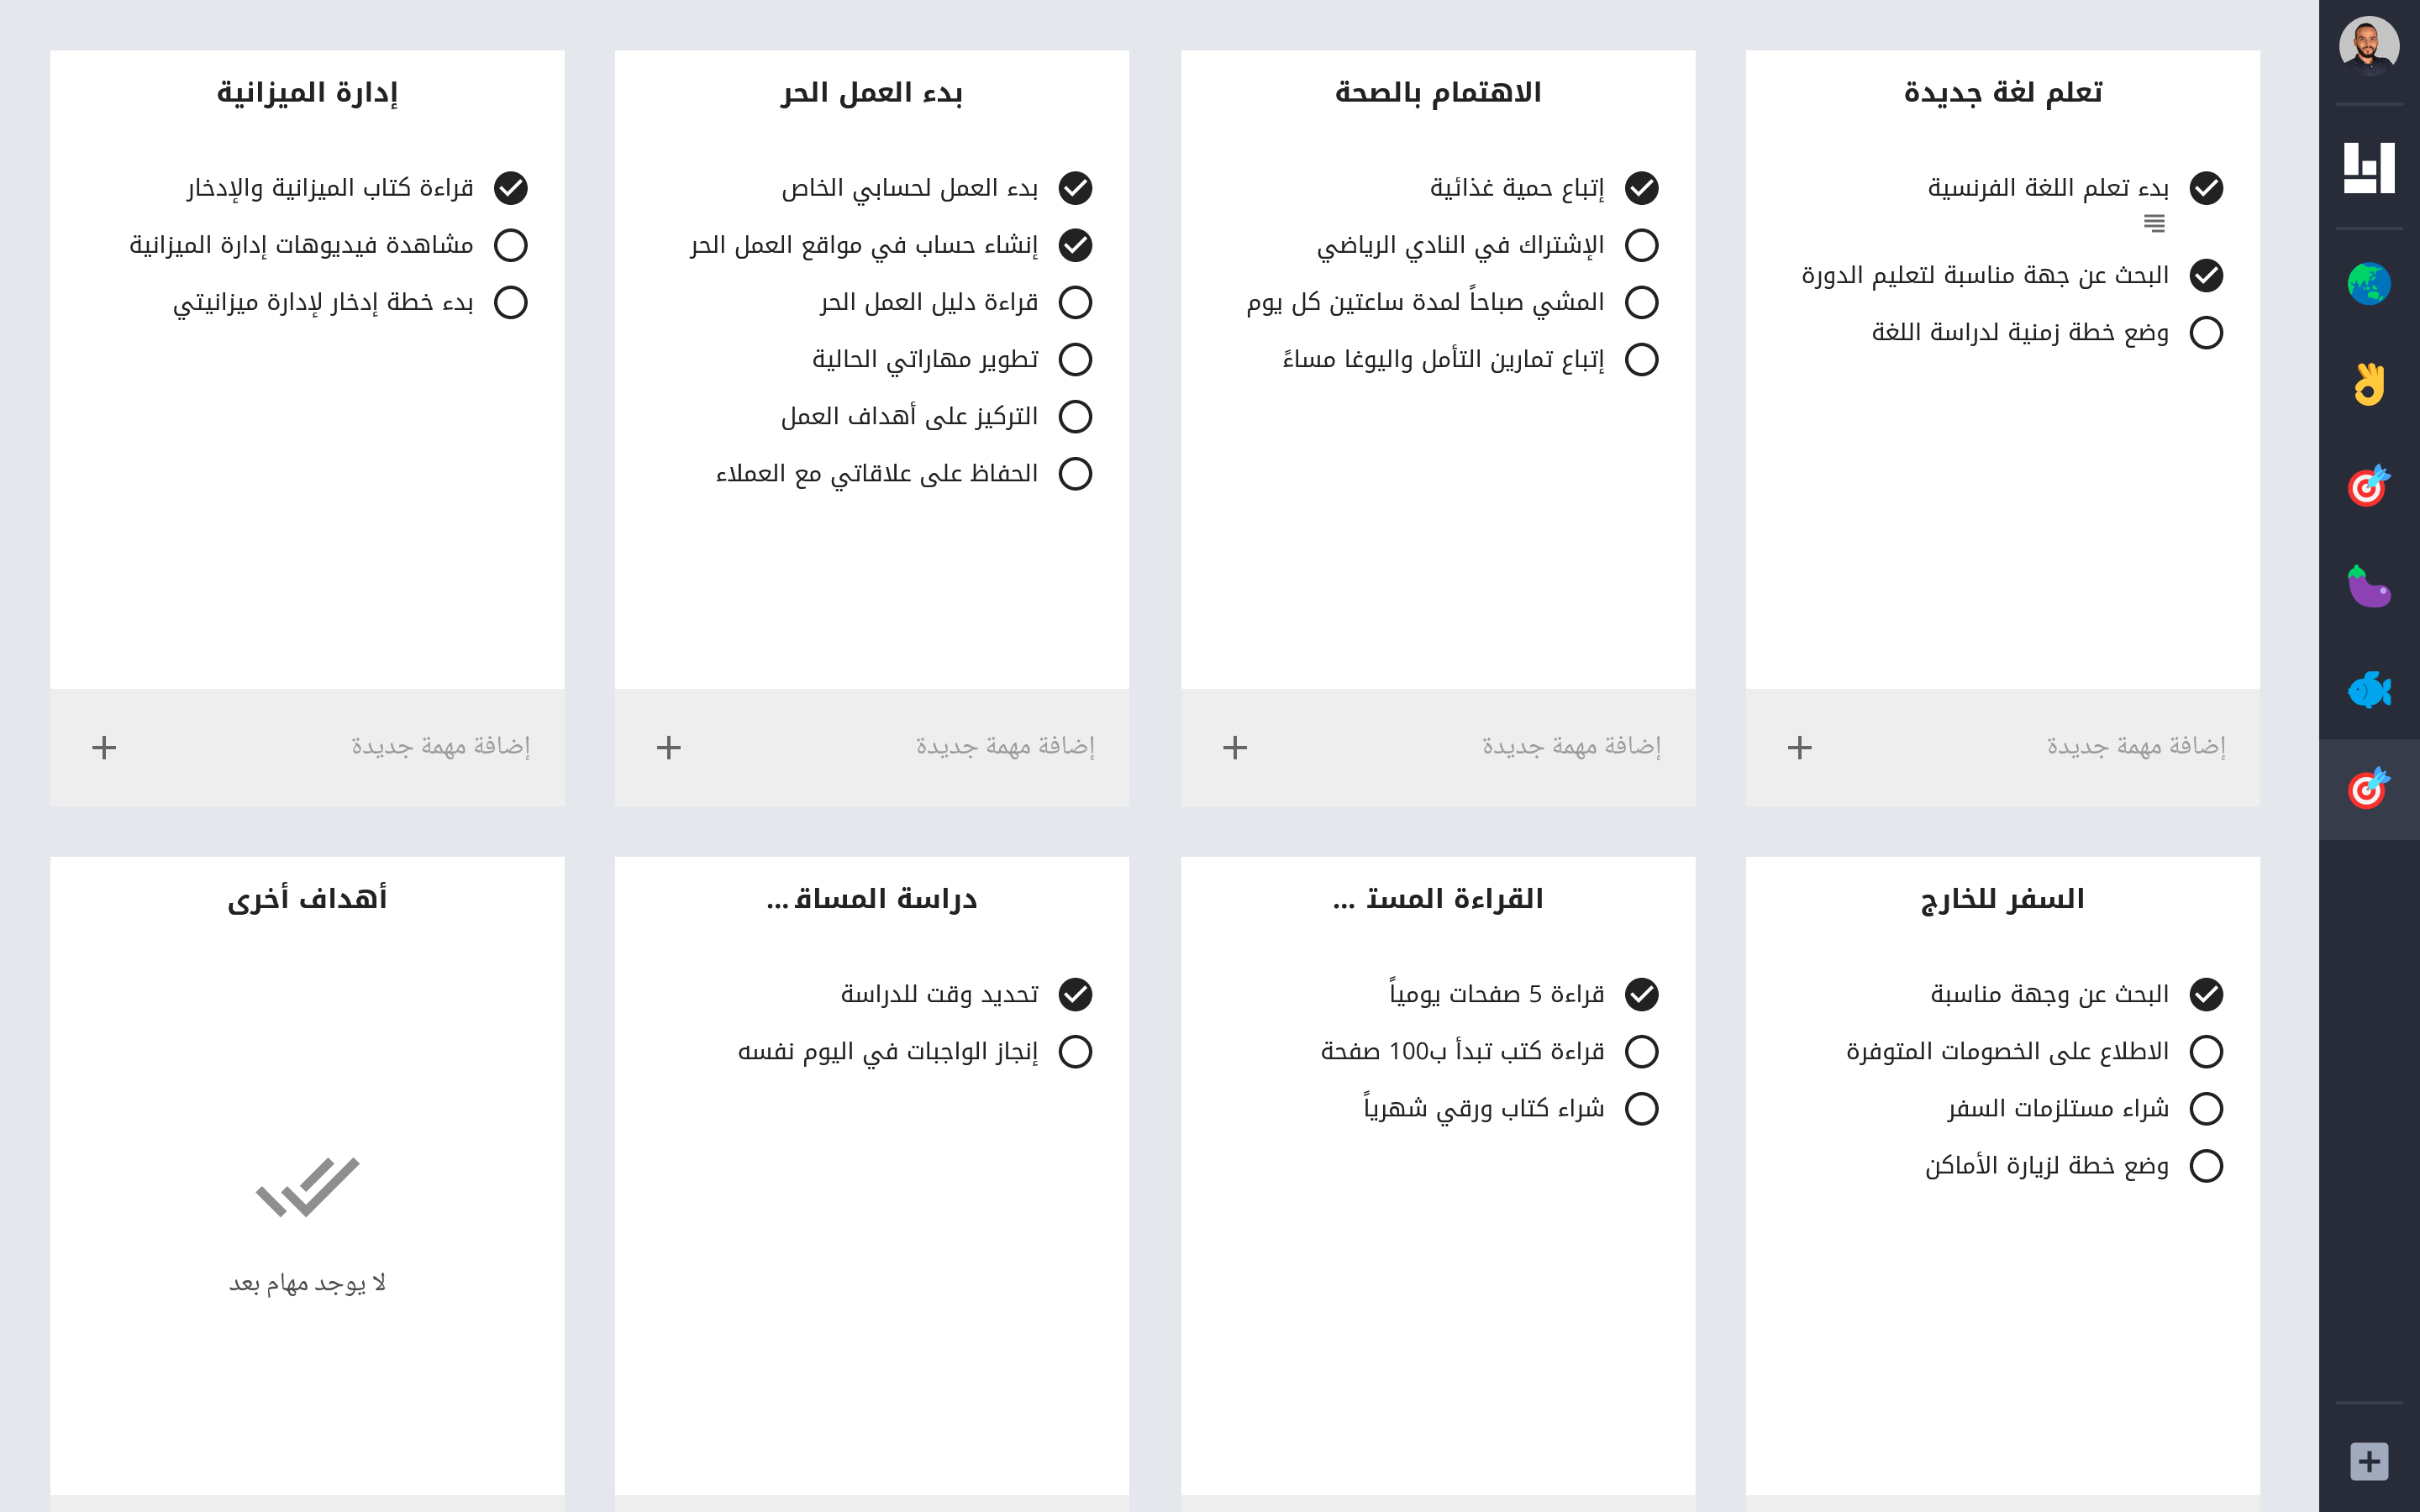 صورة لوحة تحتوي على 8 قوائم مهام، 4 قوائم تظهر بالنصف العلوي وتحتهم 4 قوائم